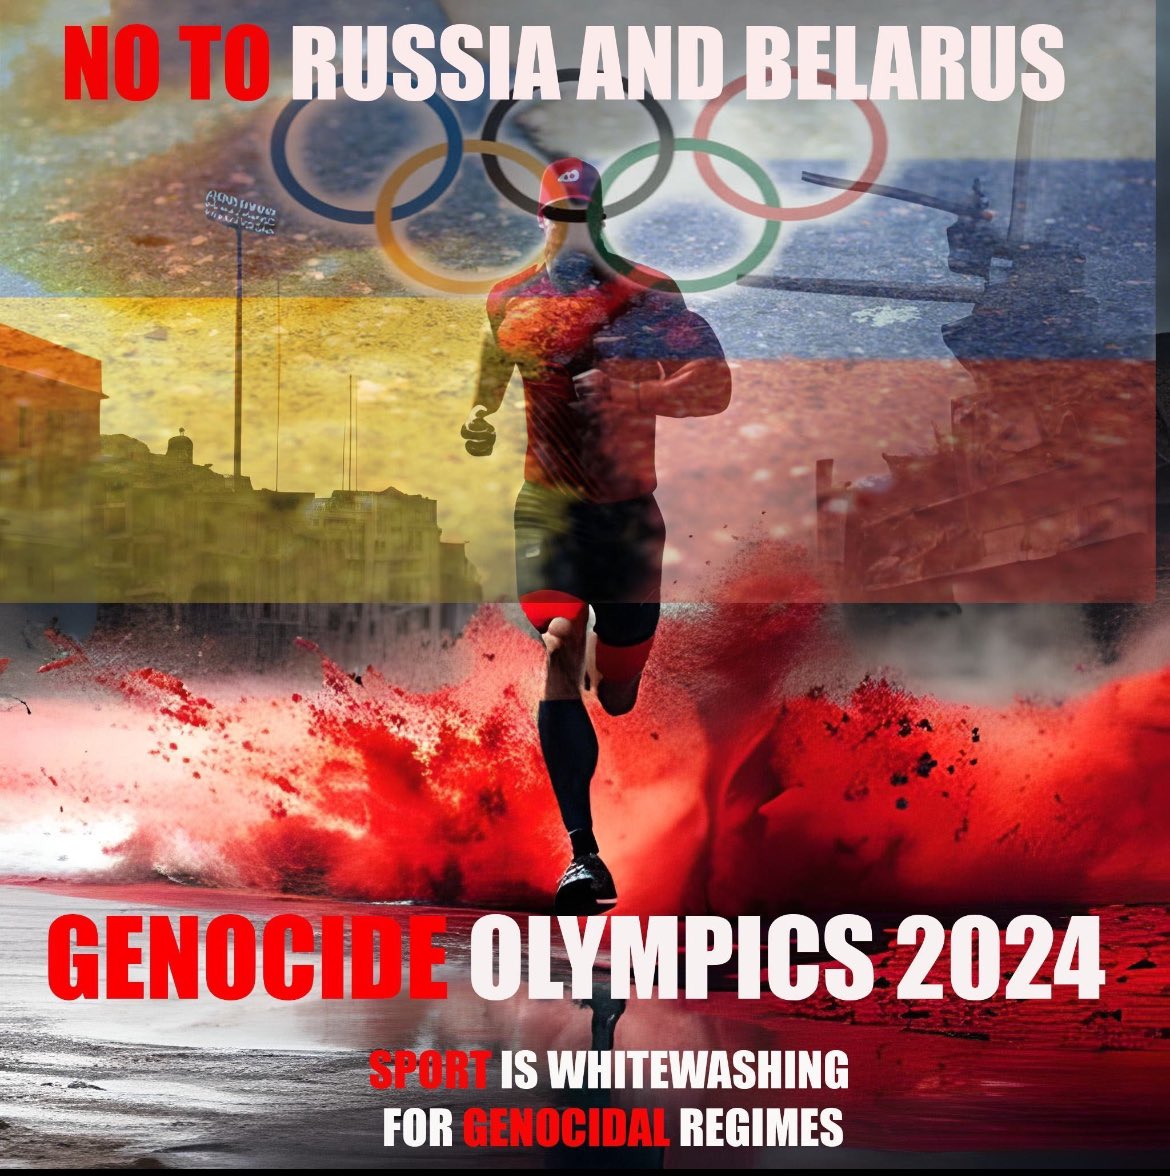 @Gummiguran #StandWithUkraine till victory 
#RussiaisATerroistState
#BoycottRussianSport 
#BoycottOlympics 
👇🏼